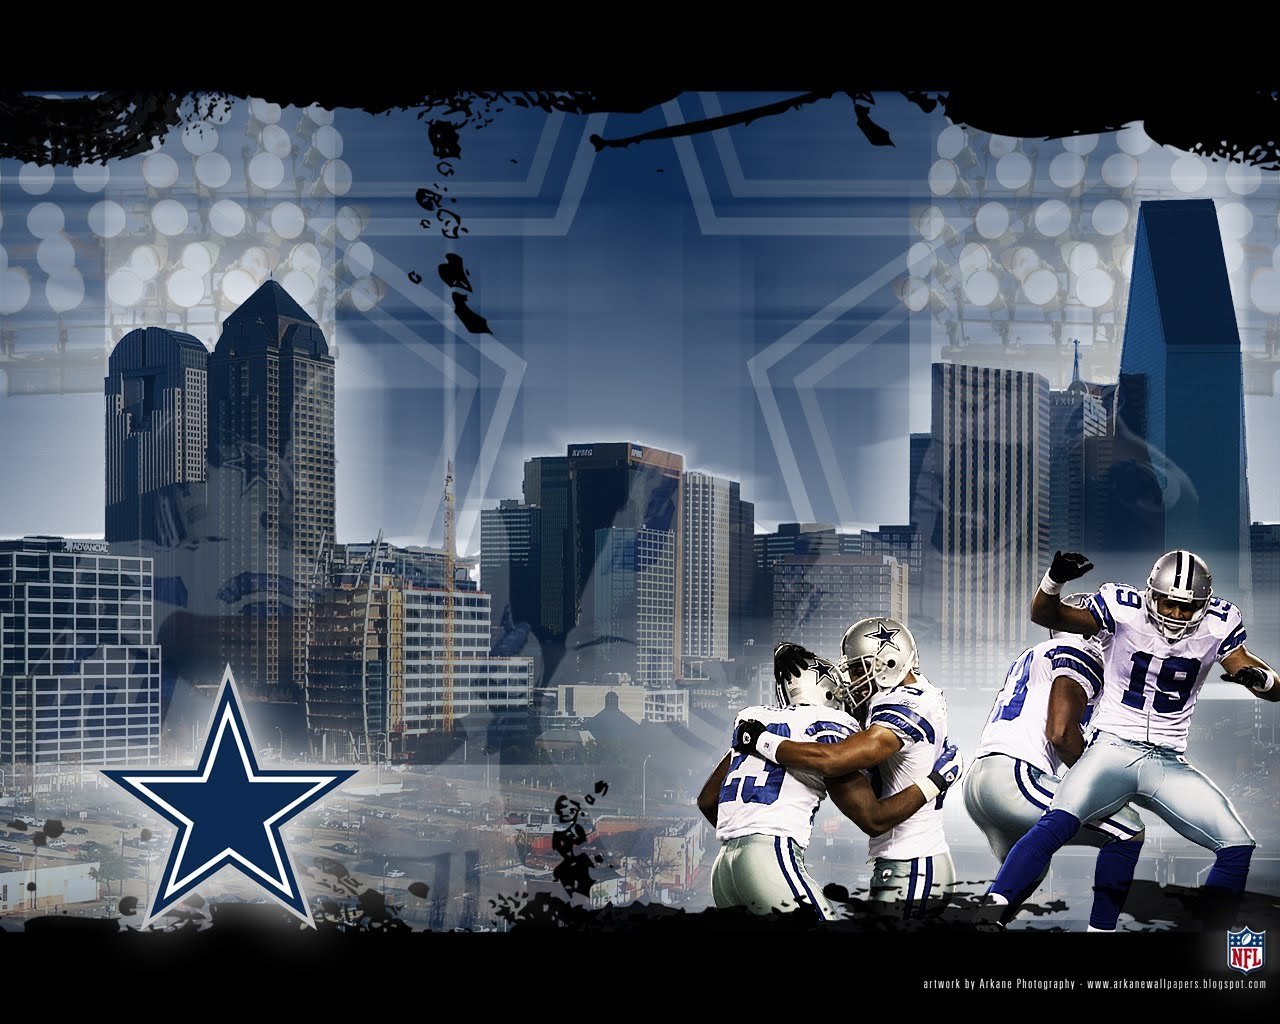 Dallas Cowboys Image HD Wallpaper And